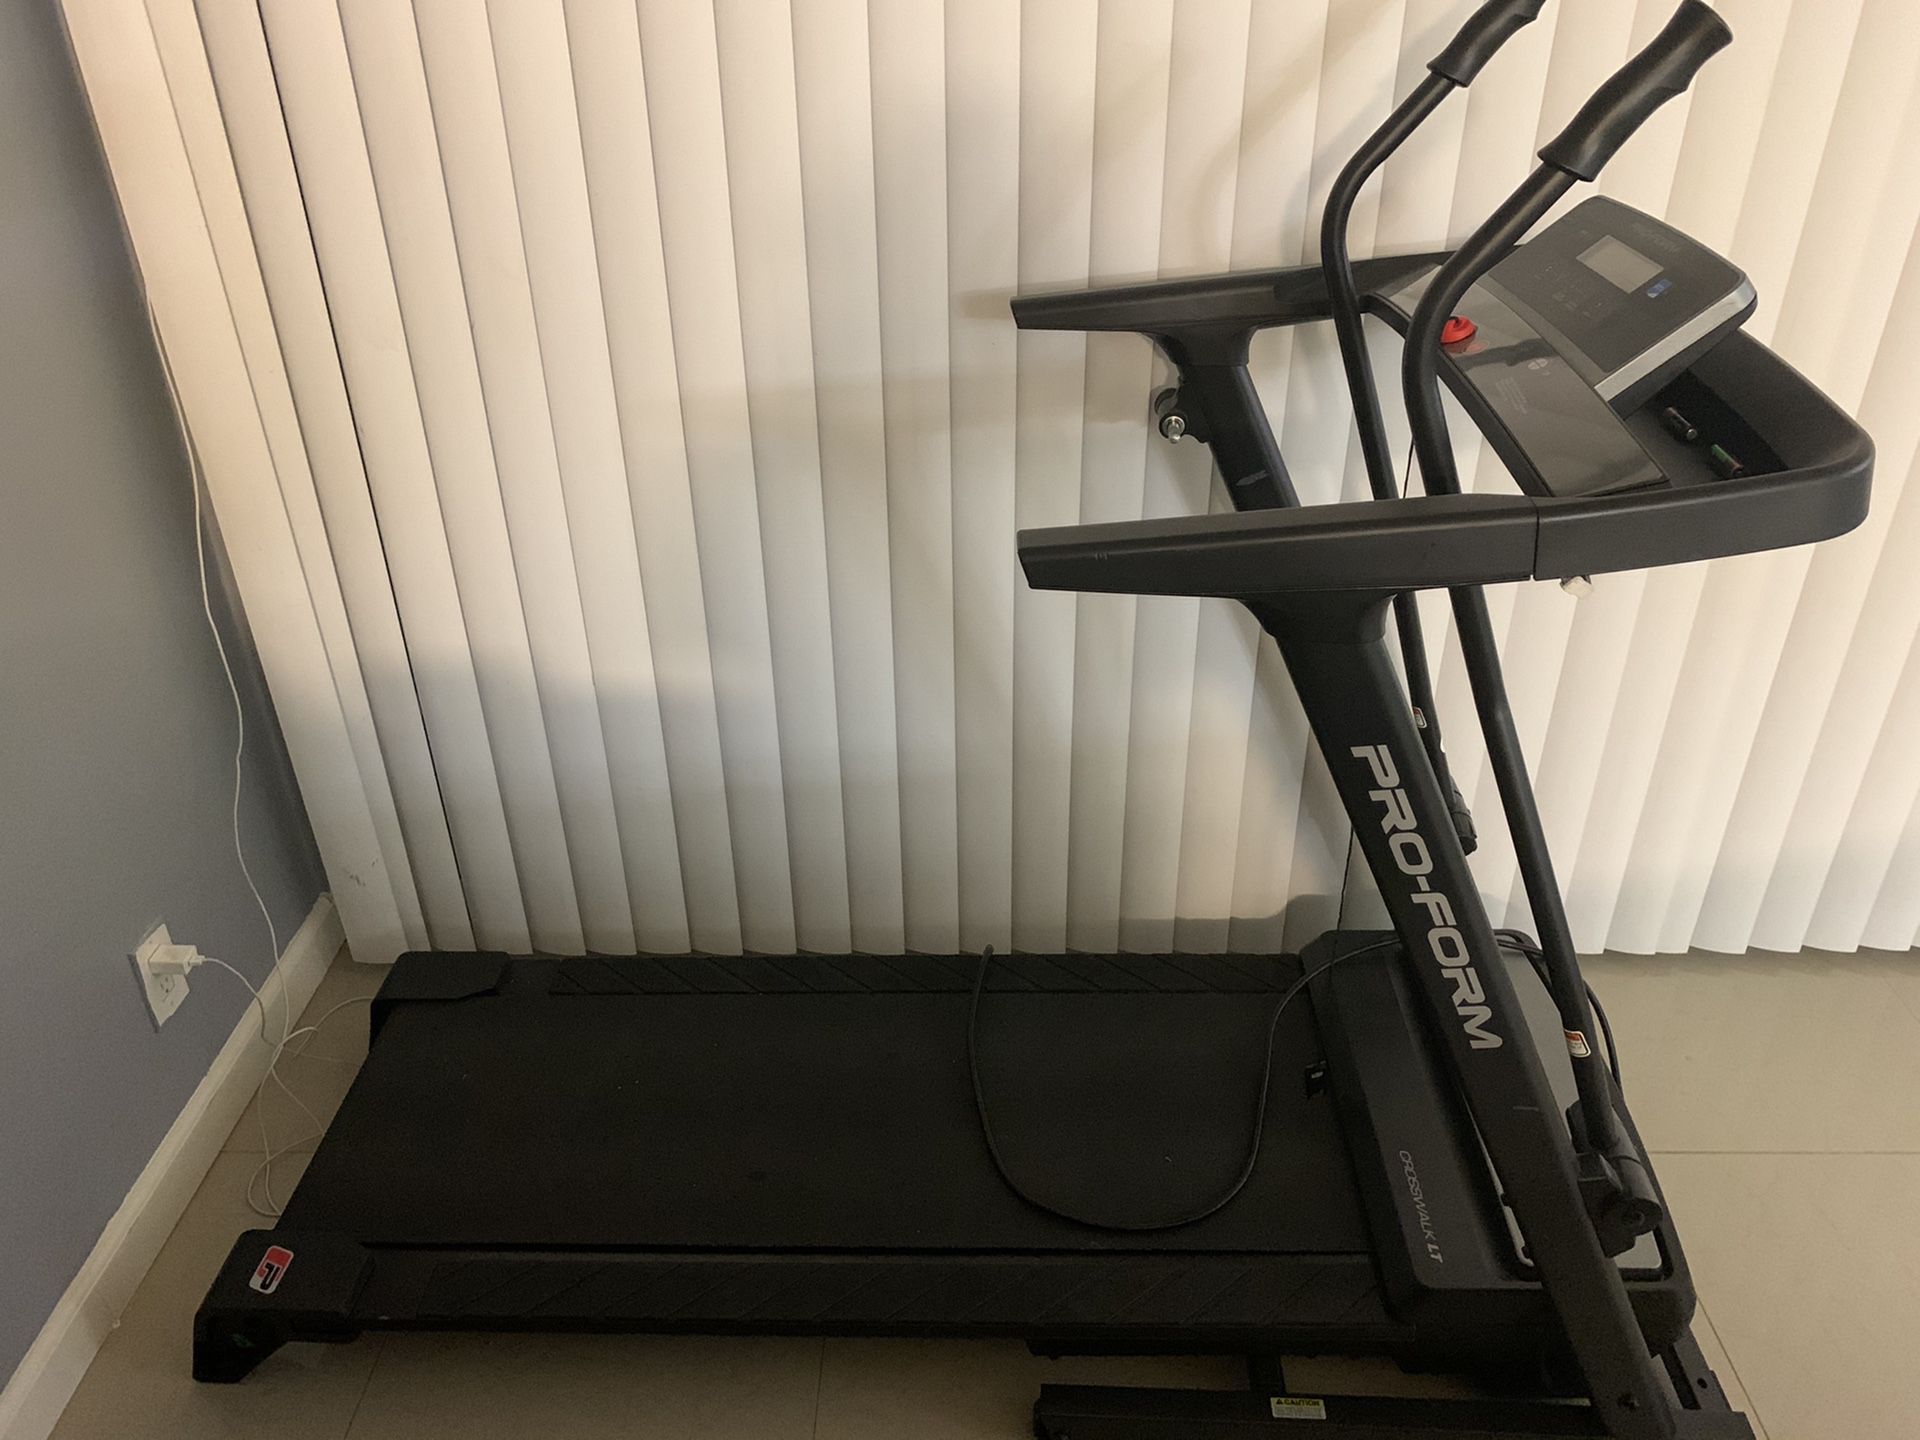 Treadmill *ON HOLD*